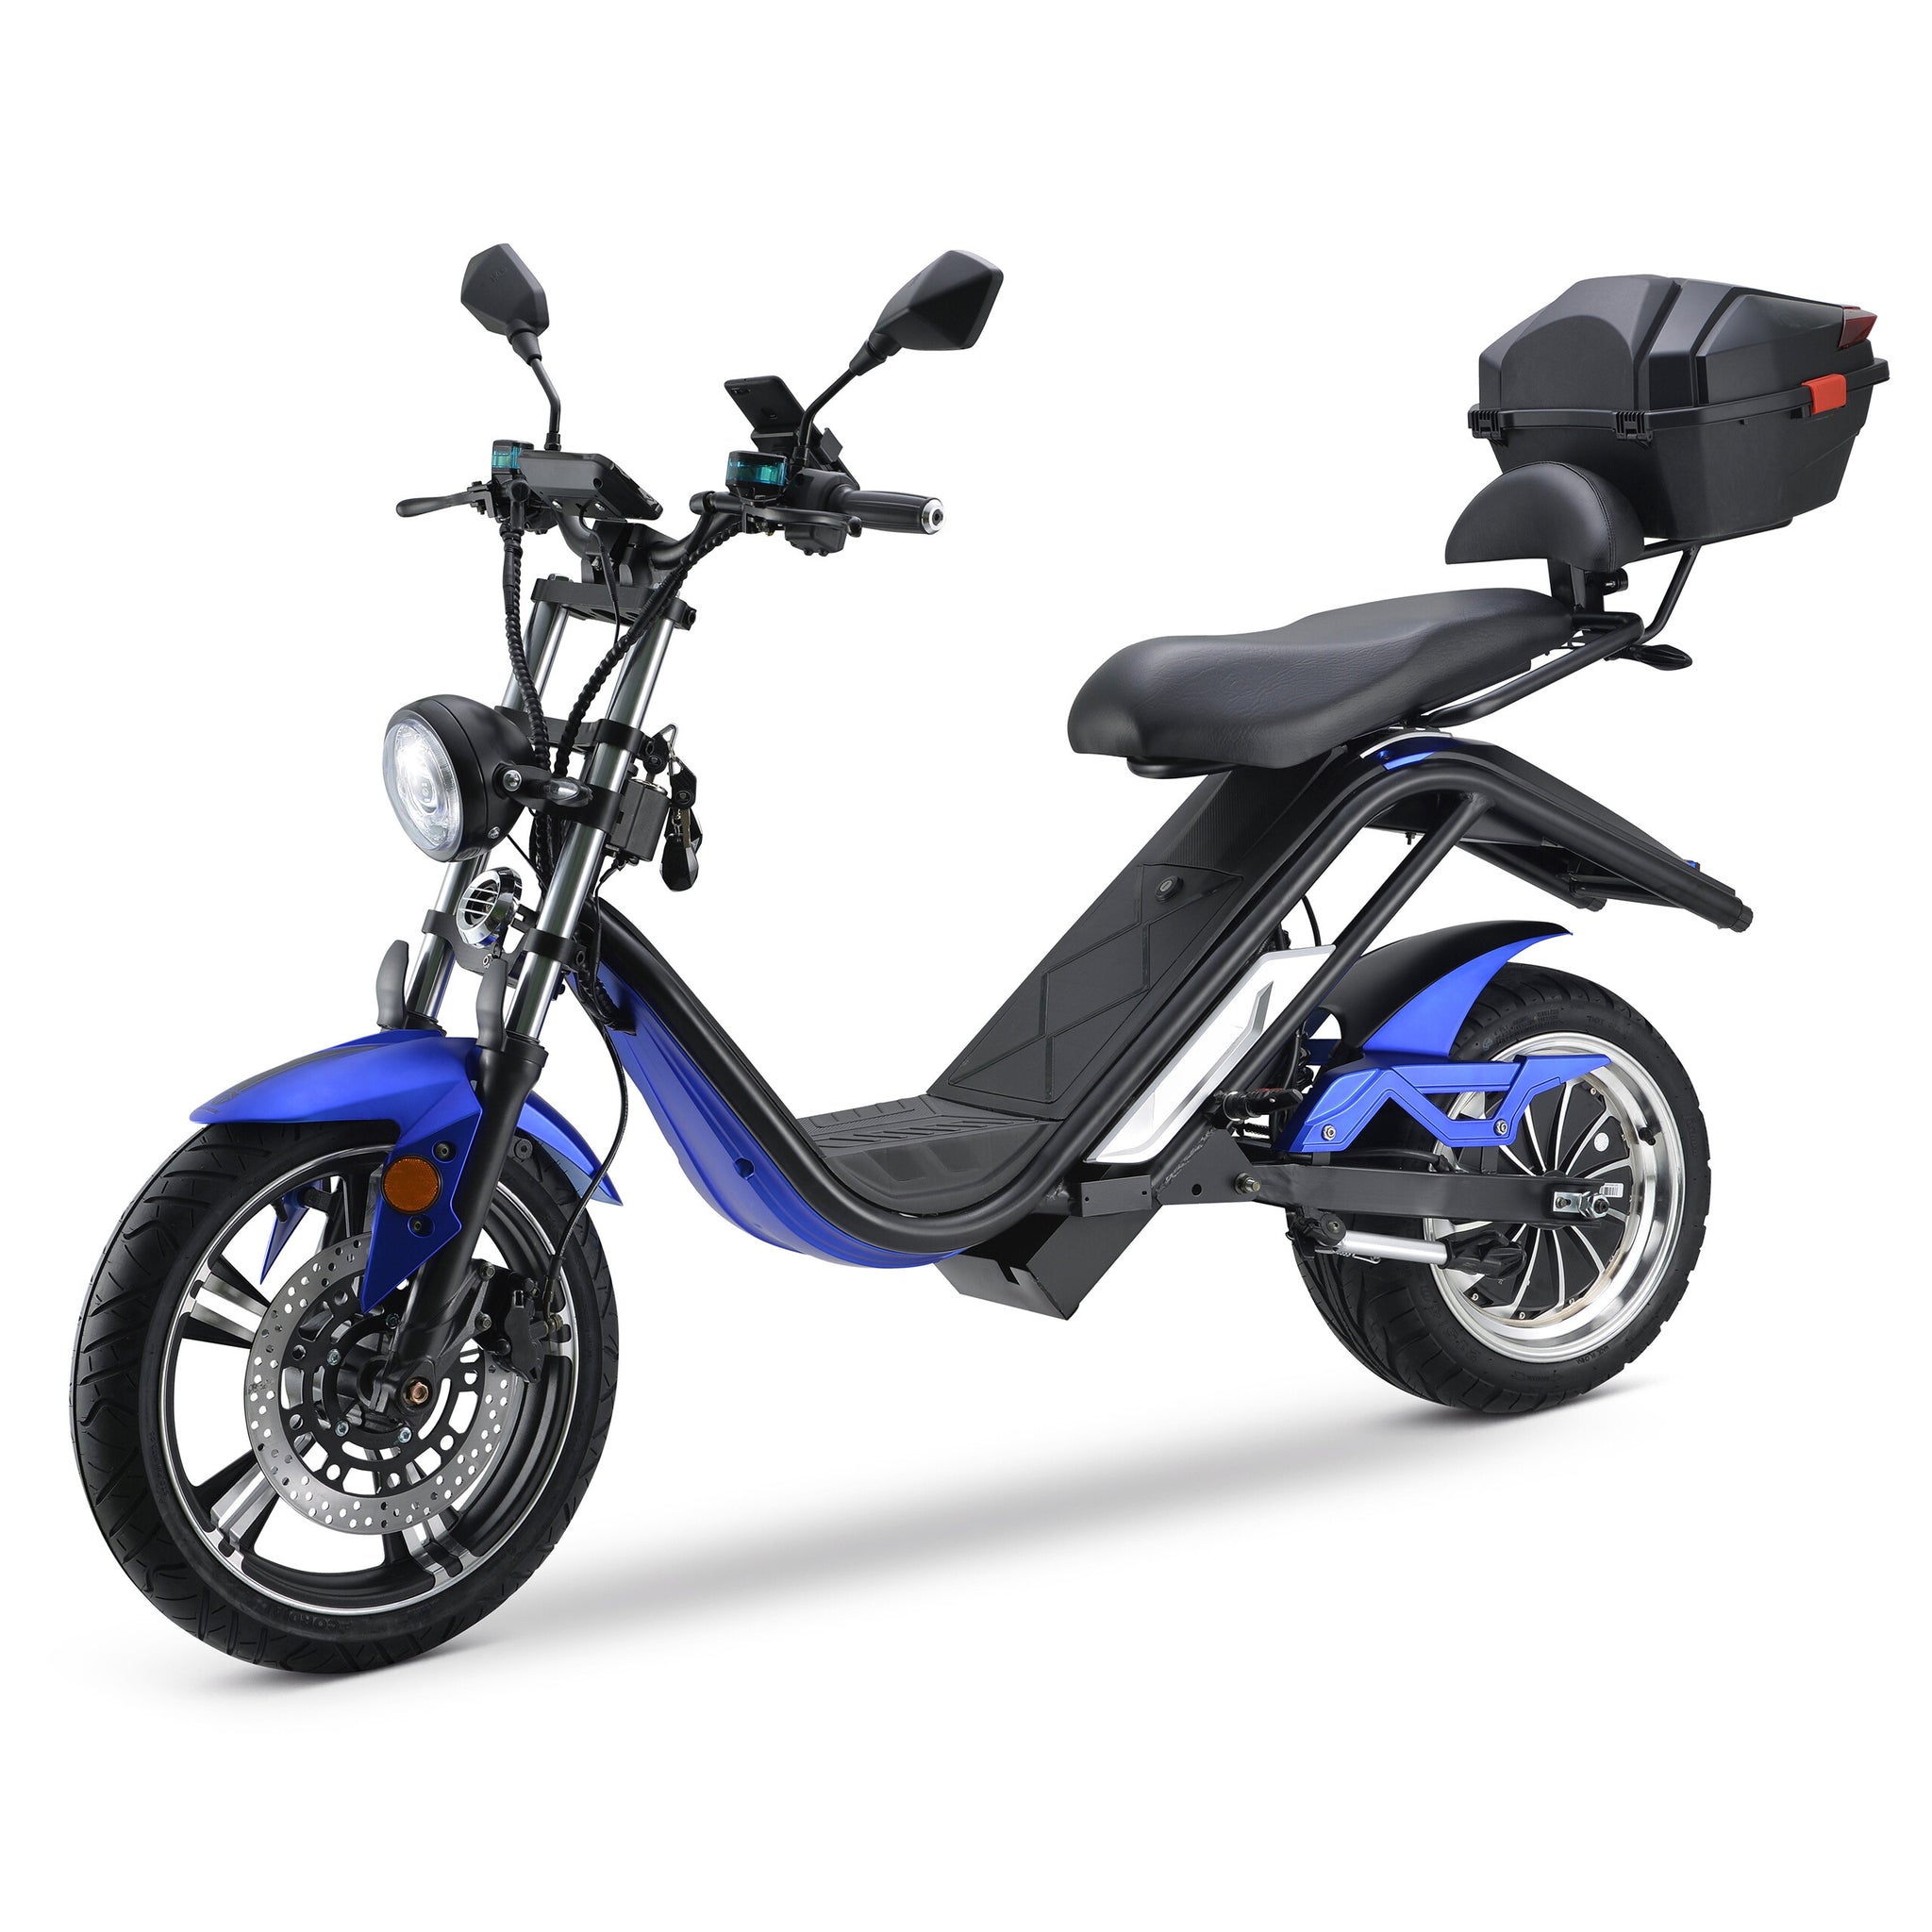 Scooter électrique double siège 1000W 20AH à product specific price